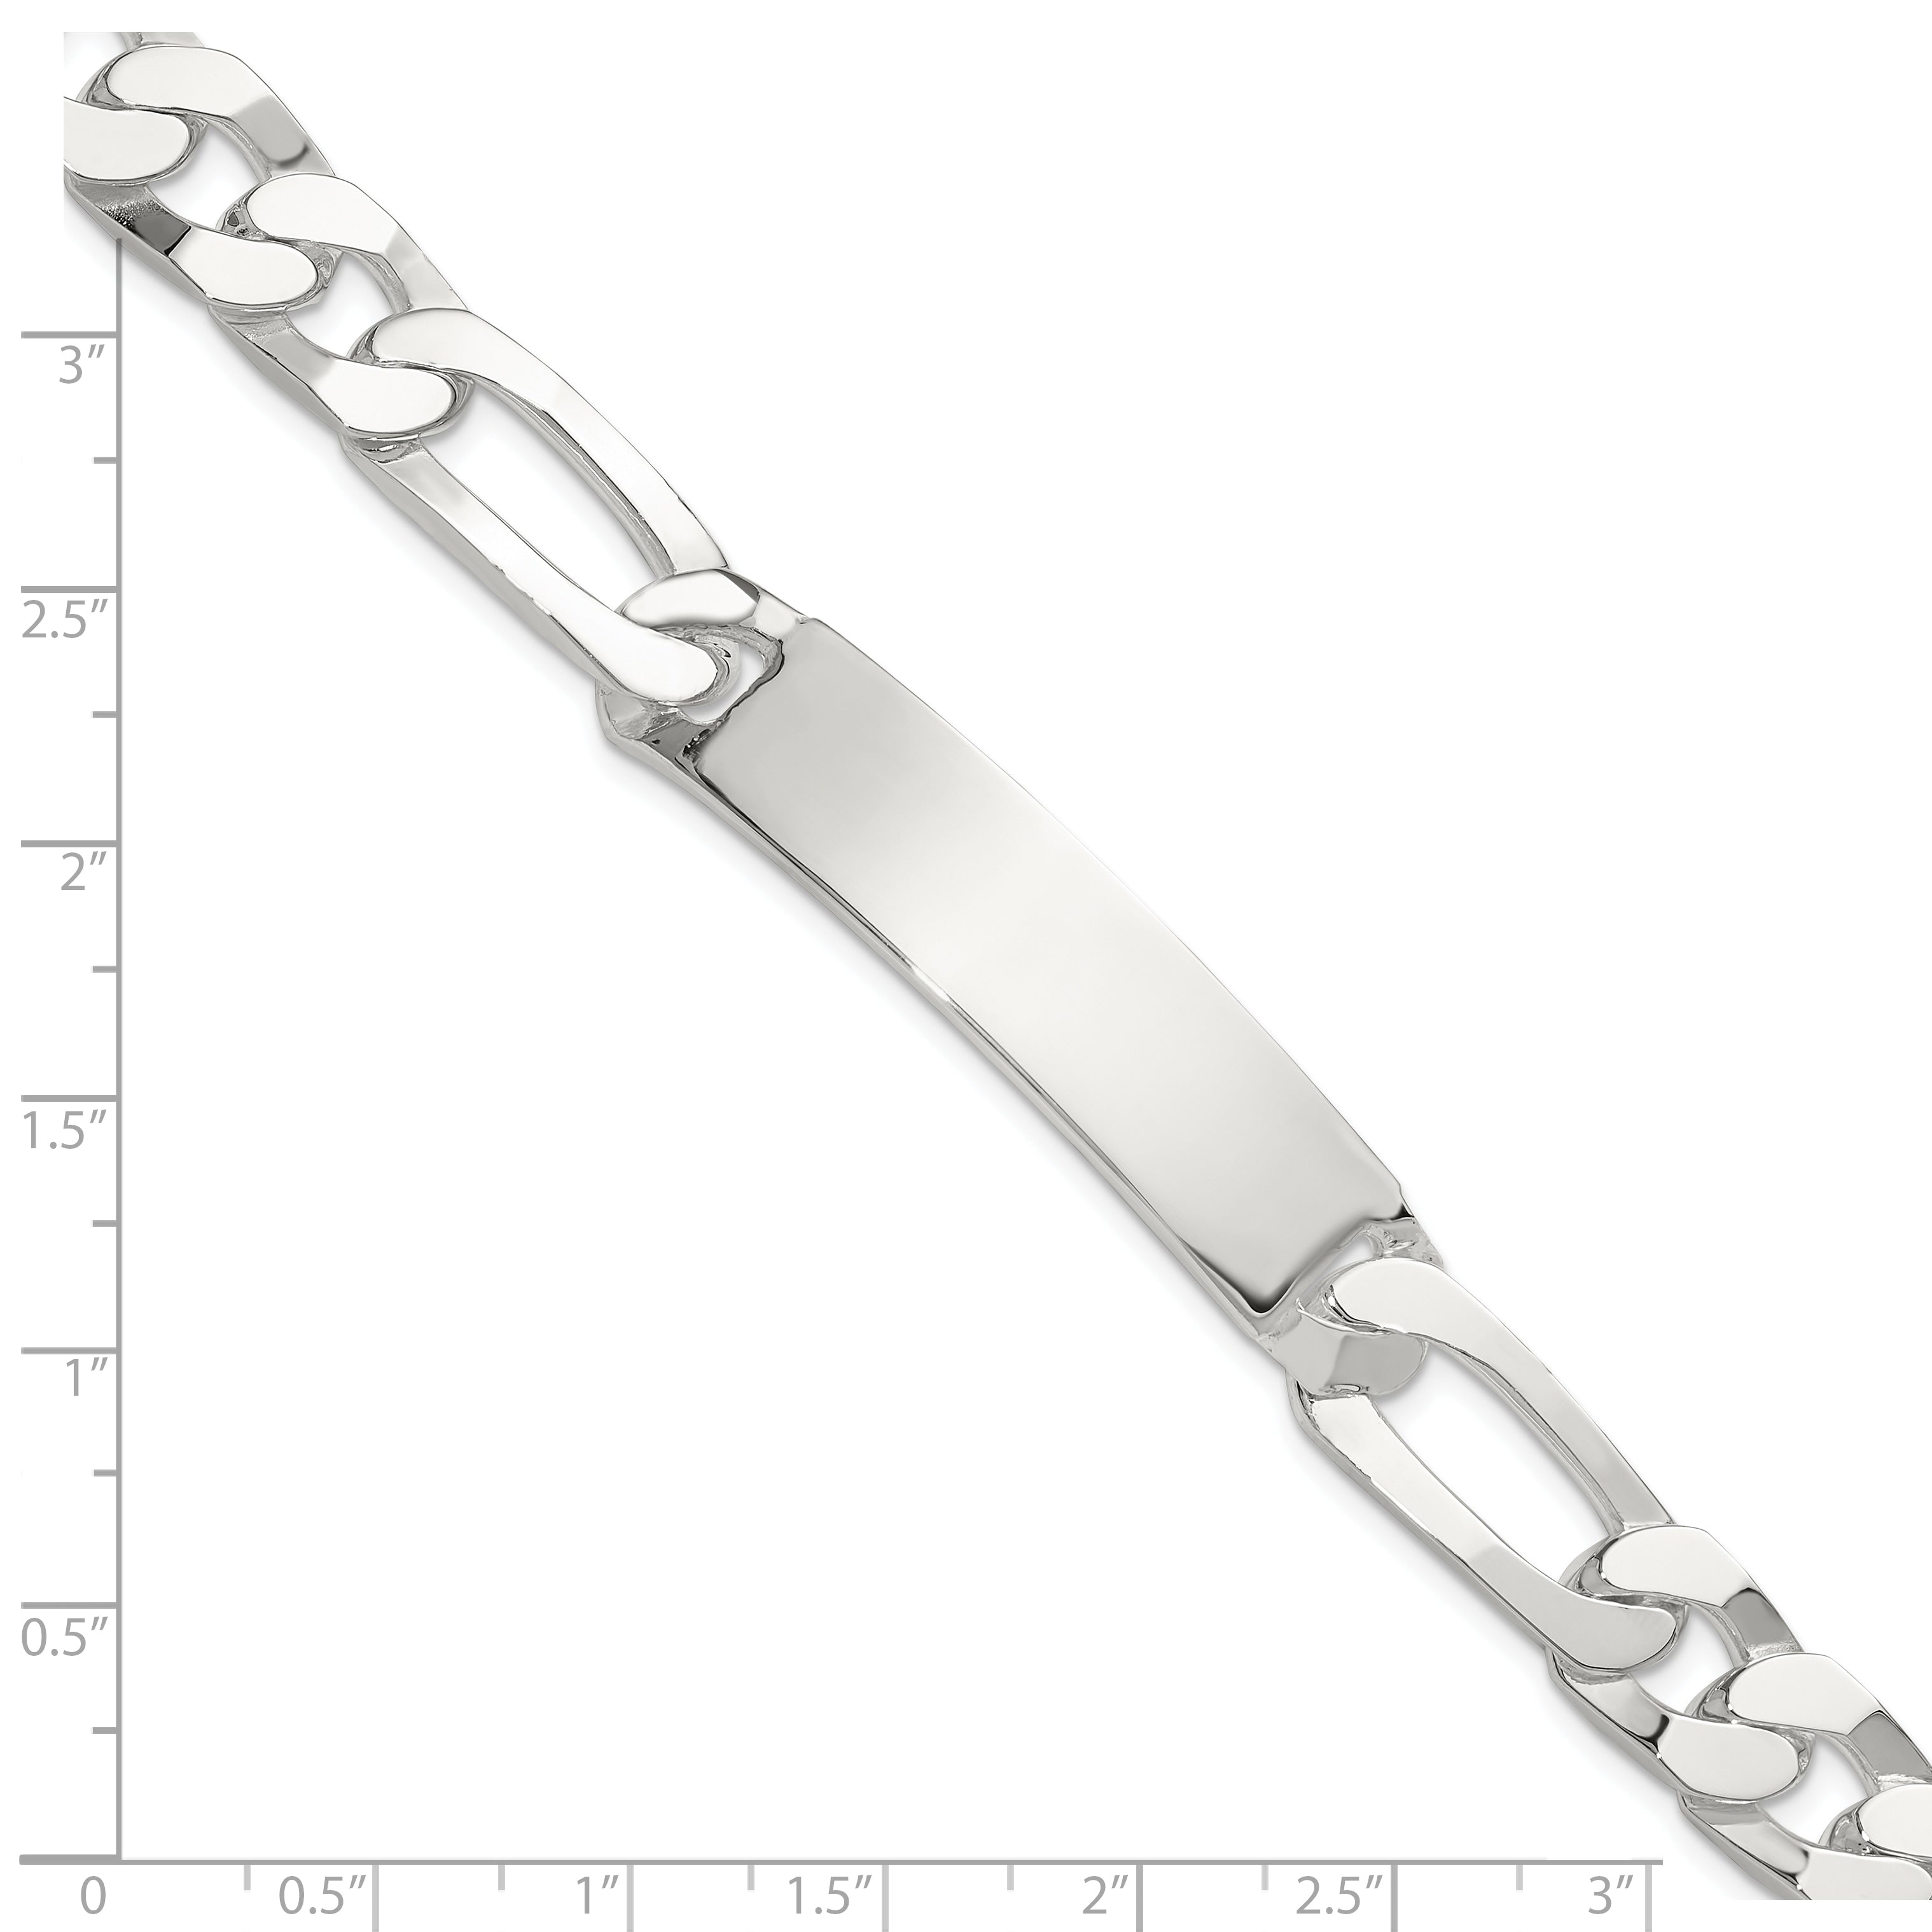 Sterling Silver 8.5in Figaro ID Bracelet